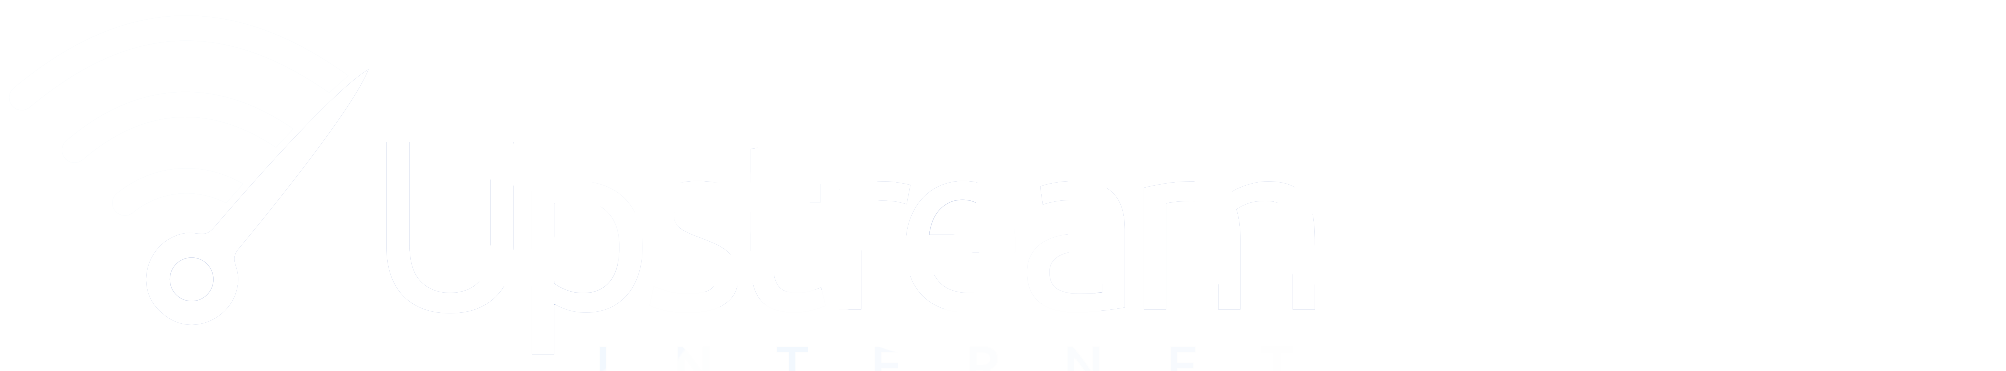 Segnatek Logo